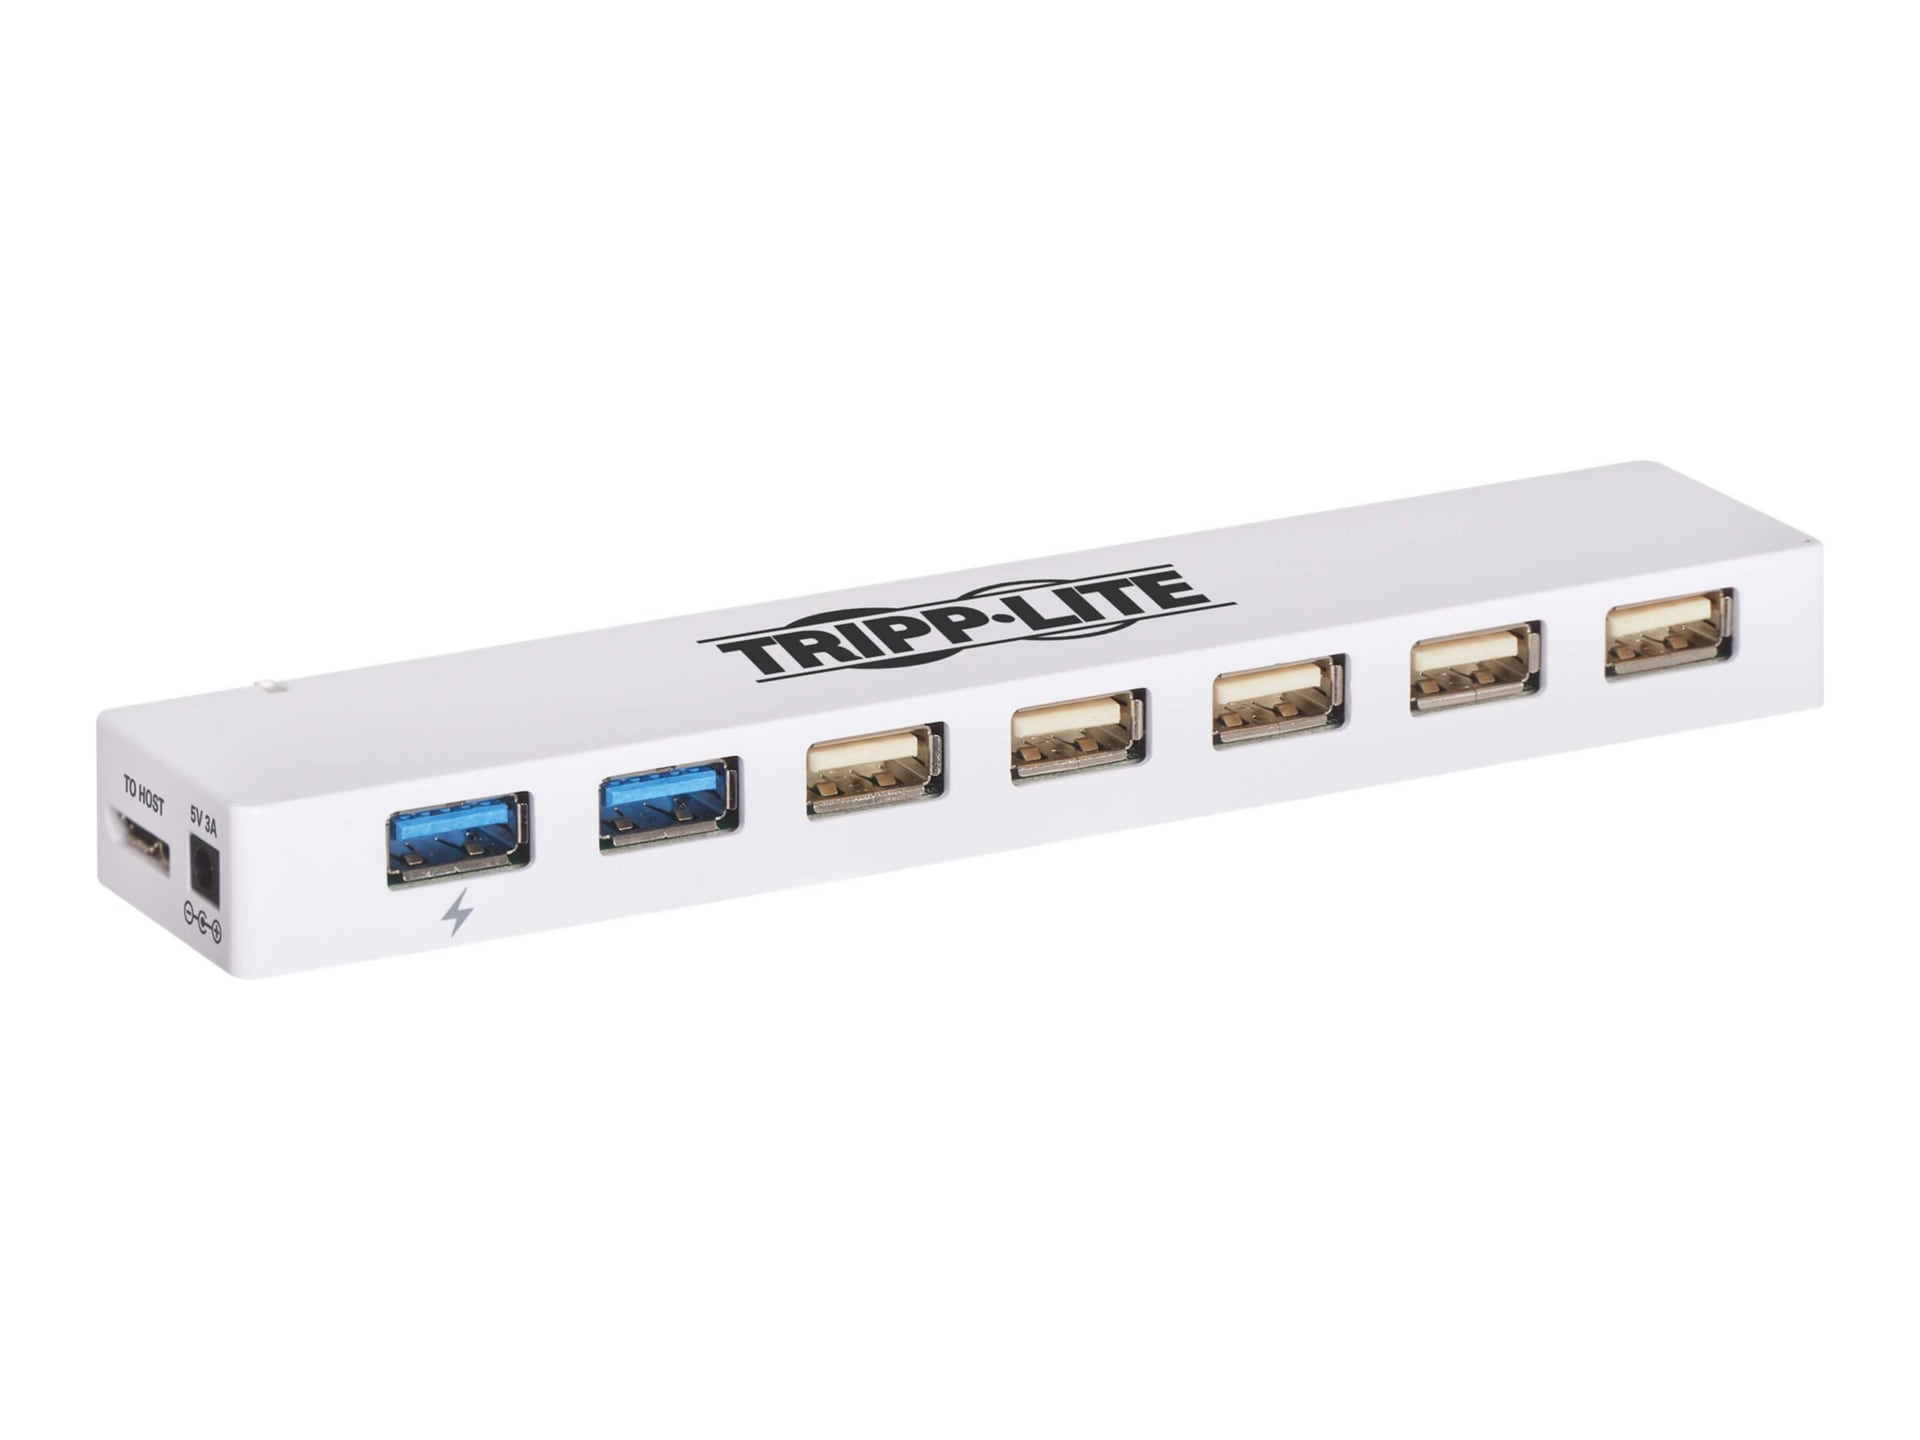 Tripp Lite 7-Port USB 3.0 / USB 2.0 Combo Hub - USB Charging, 2 USB 3.0 & 5 USB 2.0 Ports - hub - 7 ports